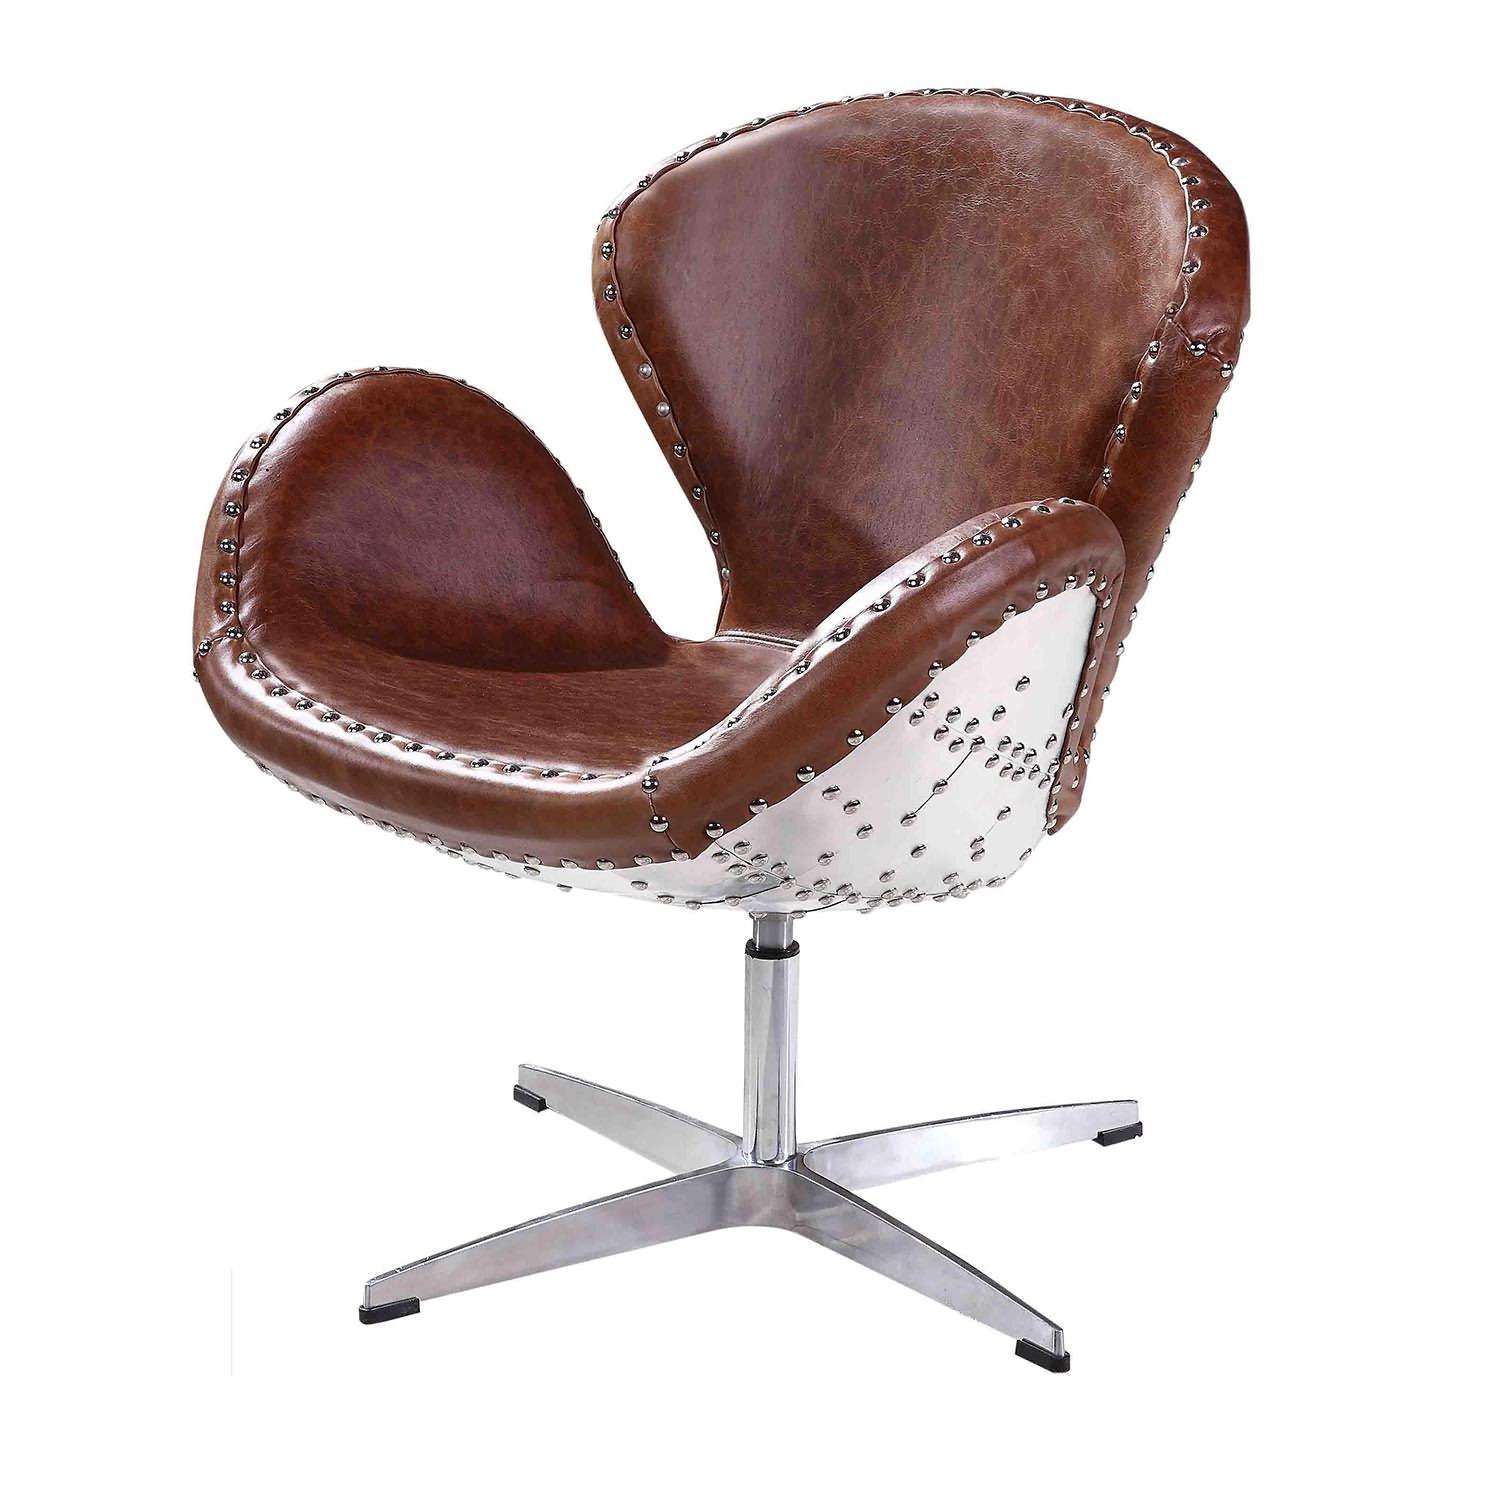 Swan Chair|Lounge chair|leisure chair|Artech